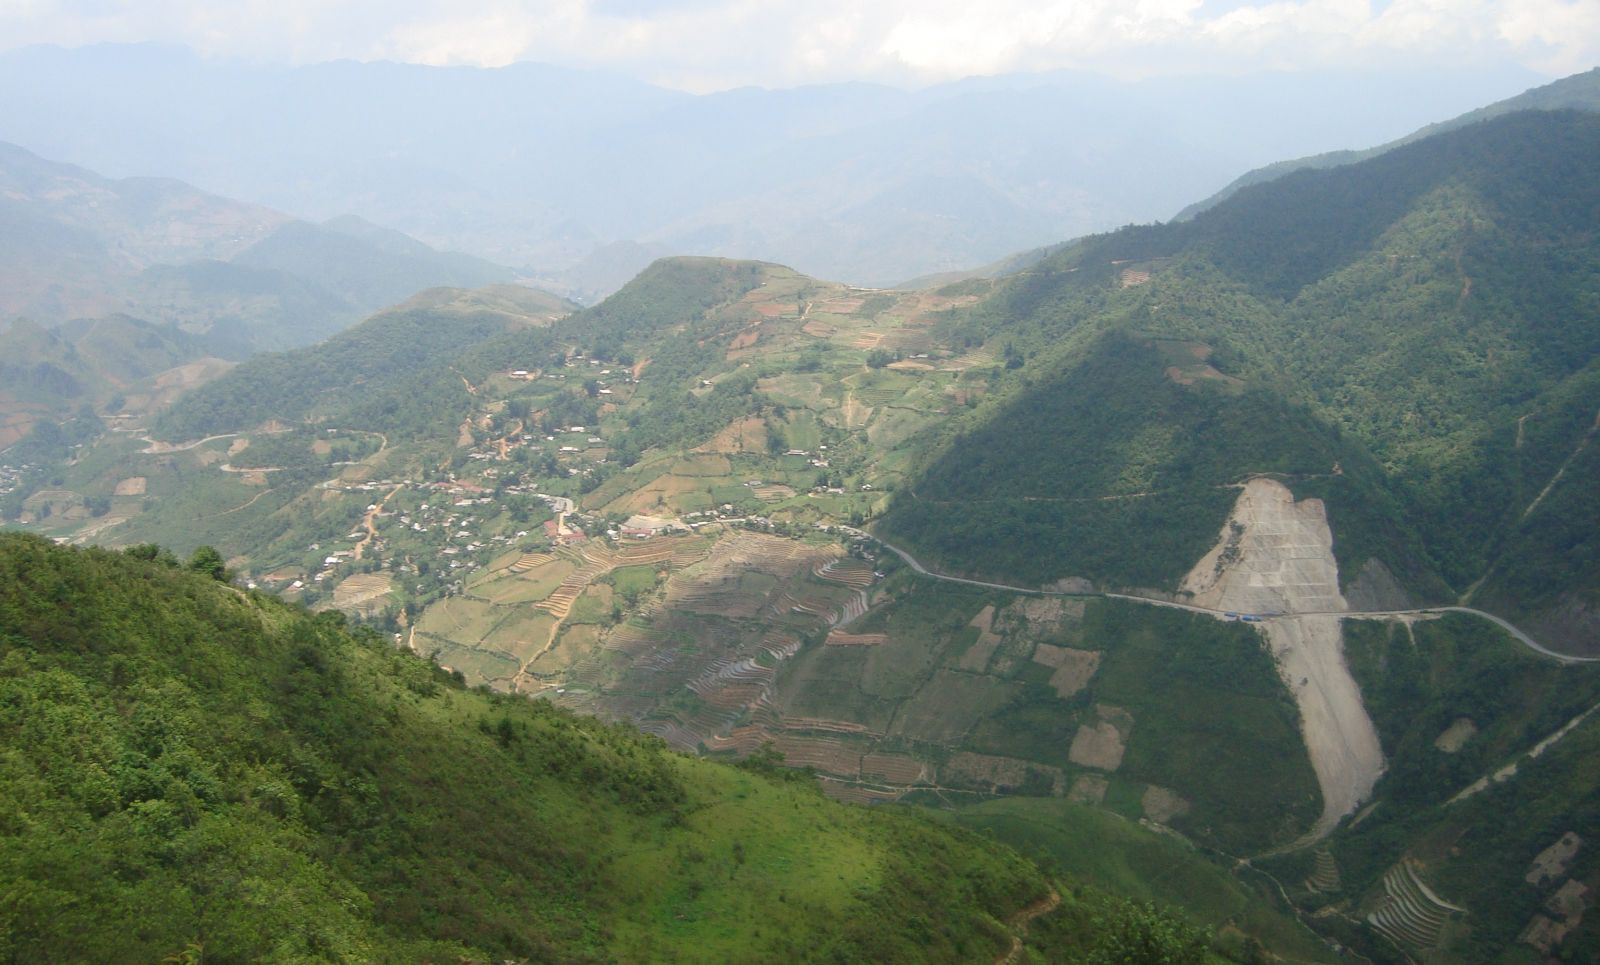 The Khau Pha mountain pass